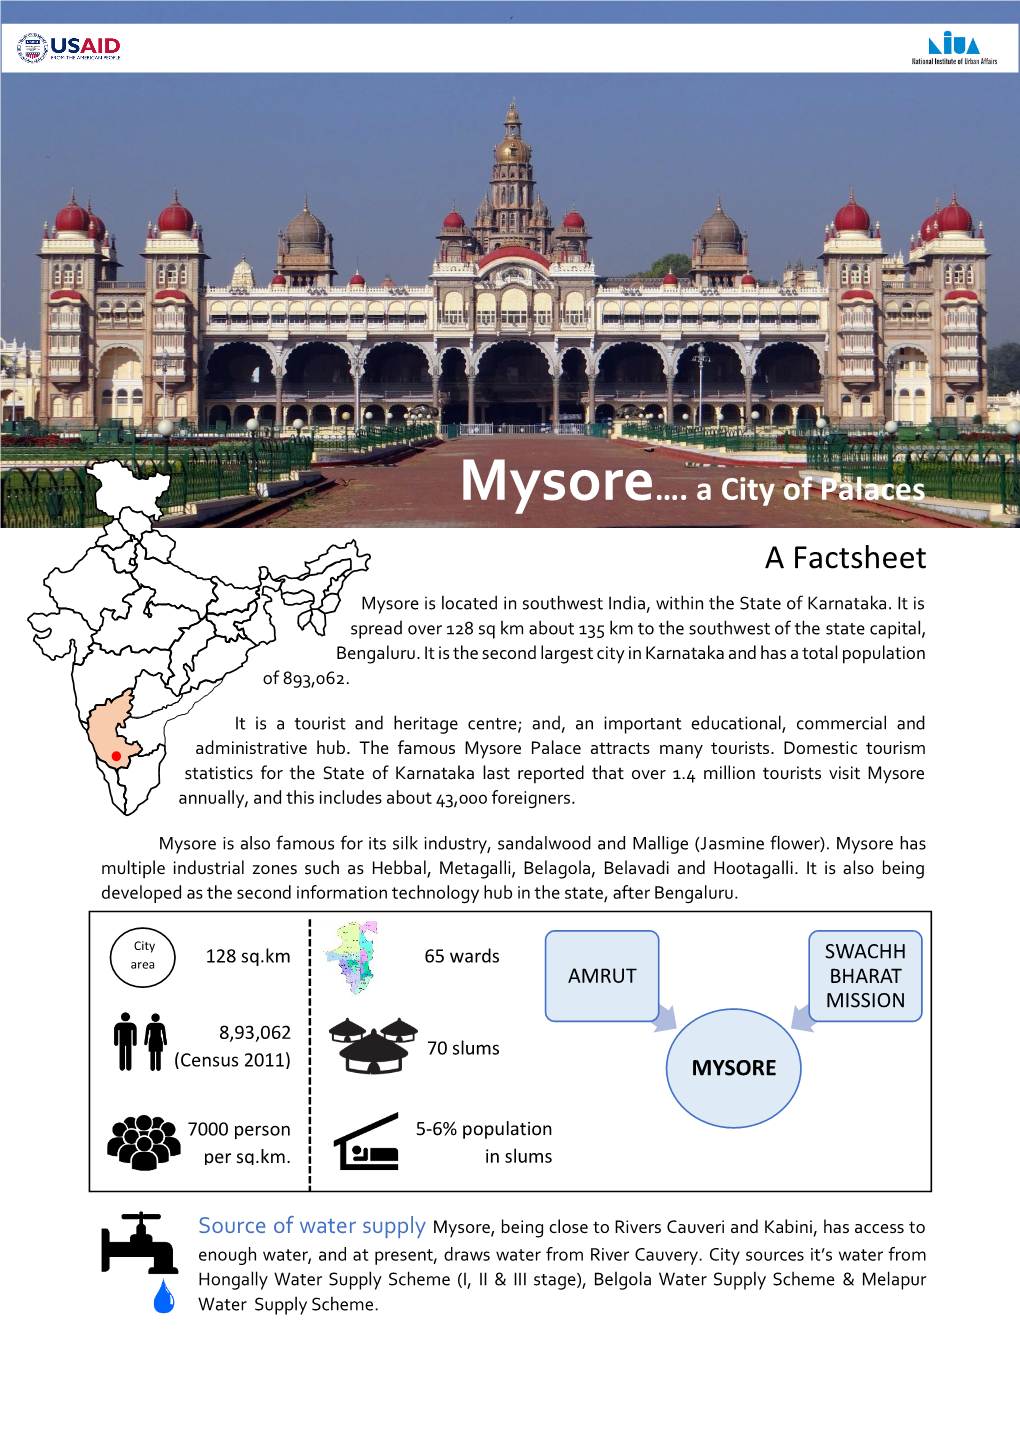 Mysore…. a City of Palaces